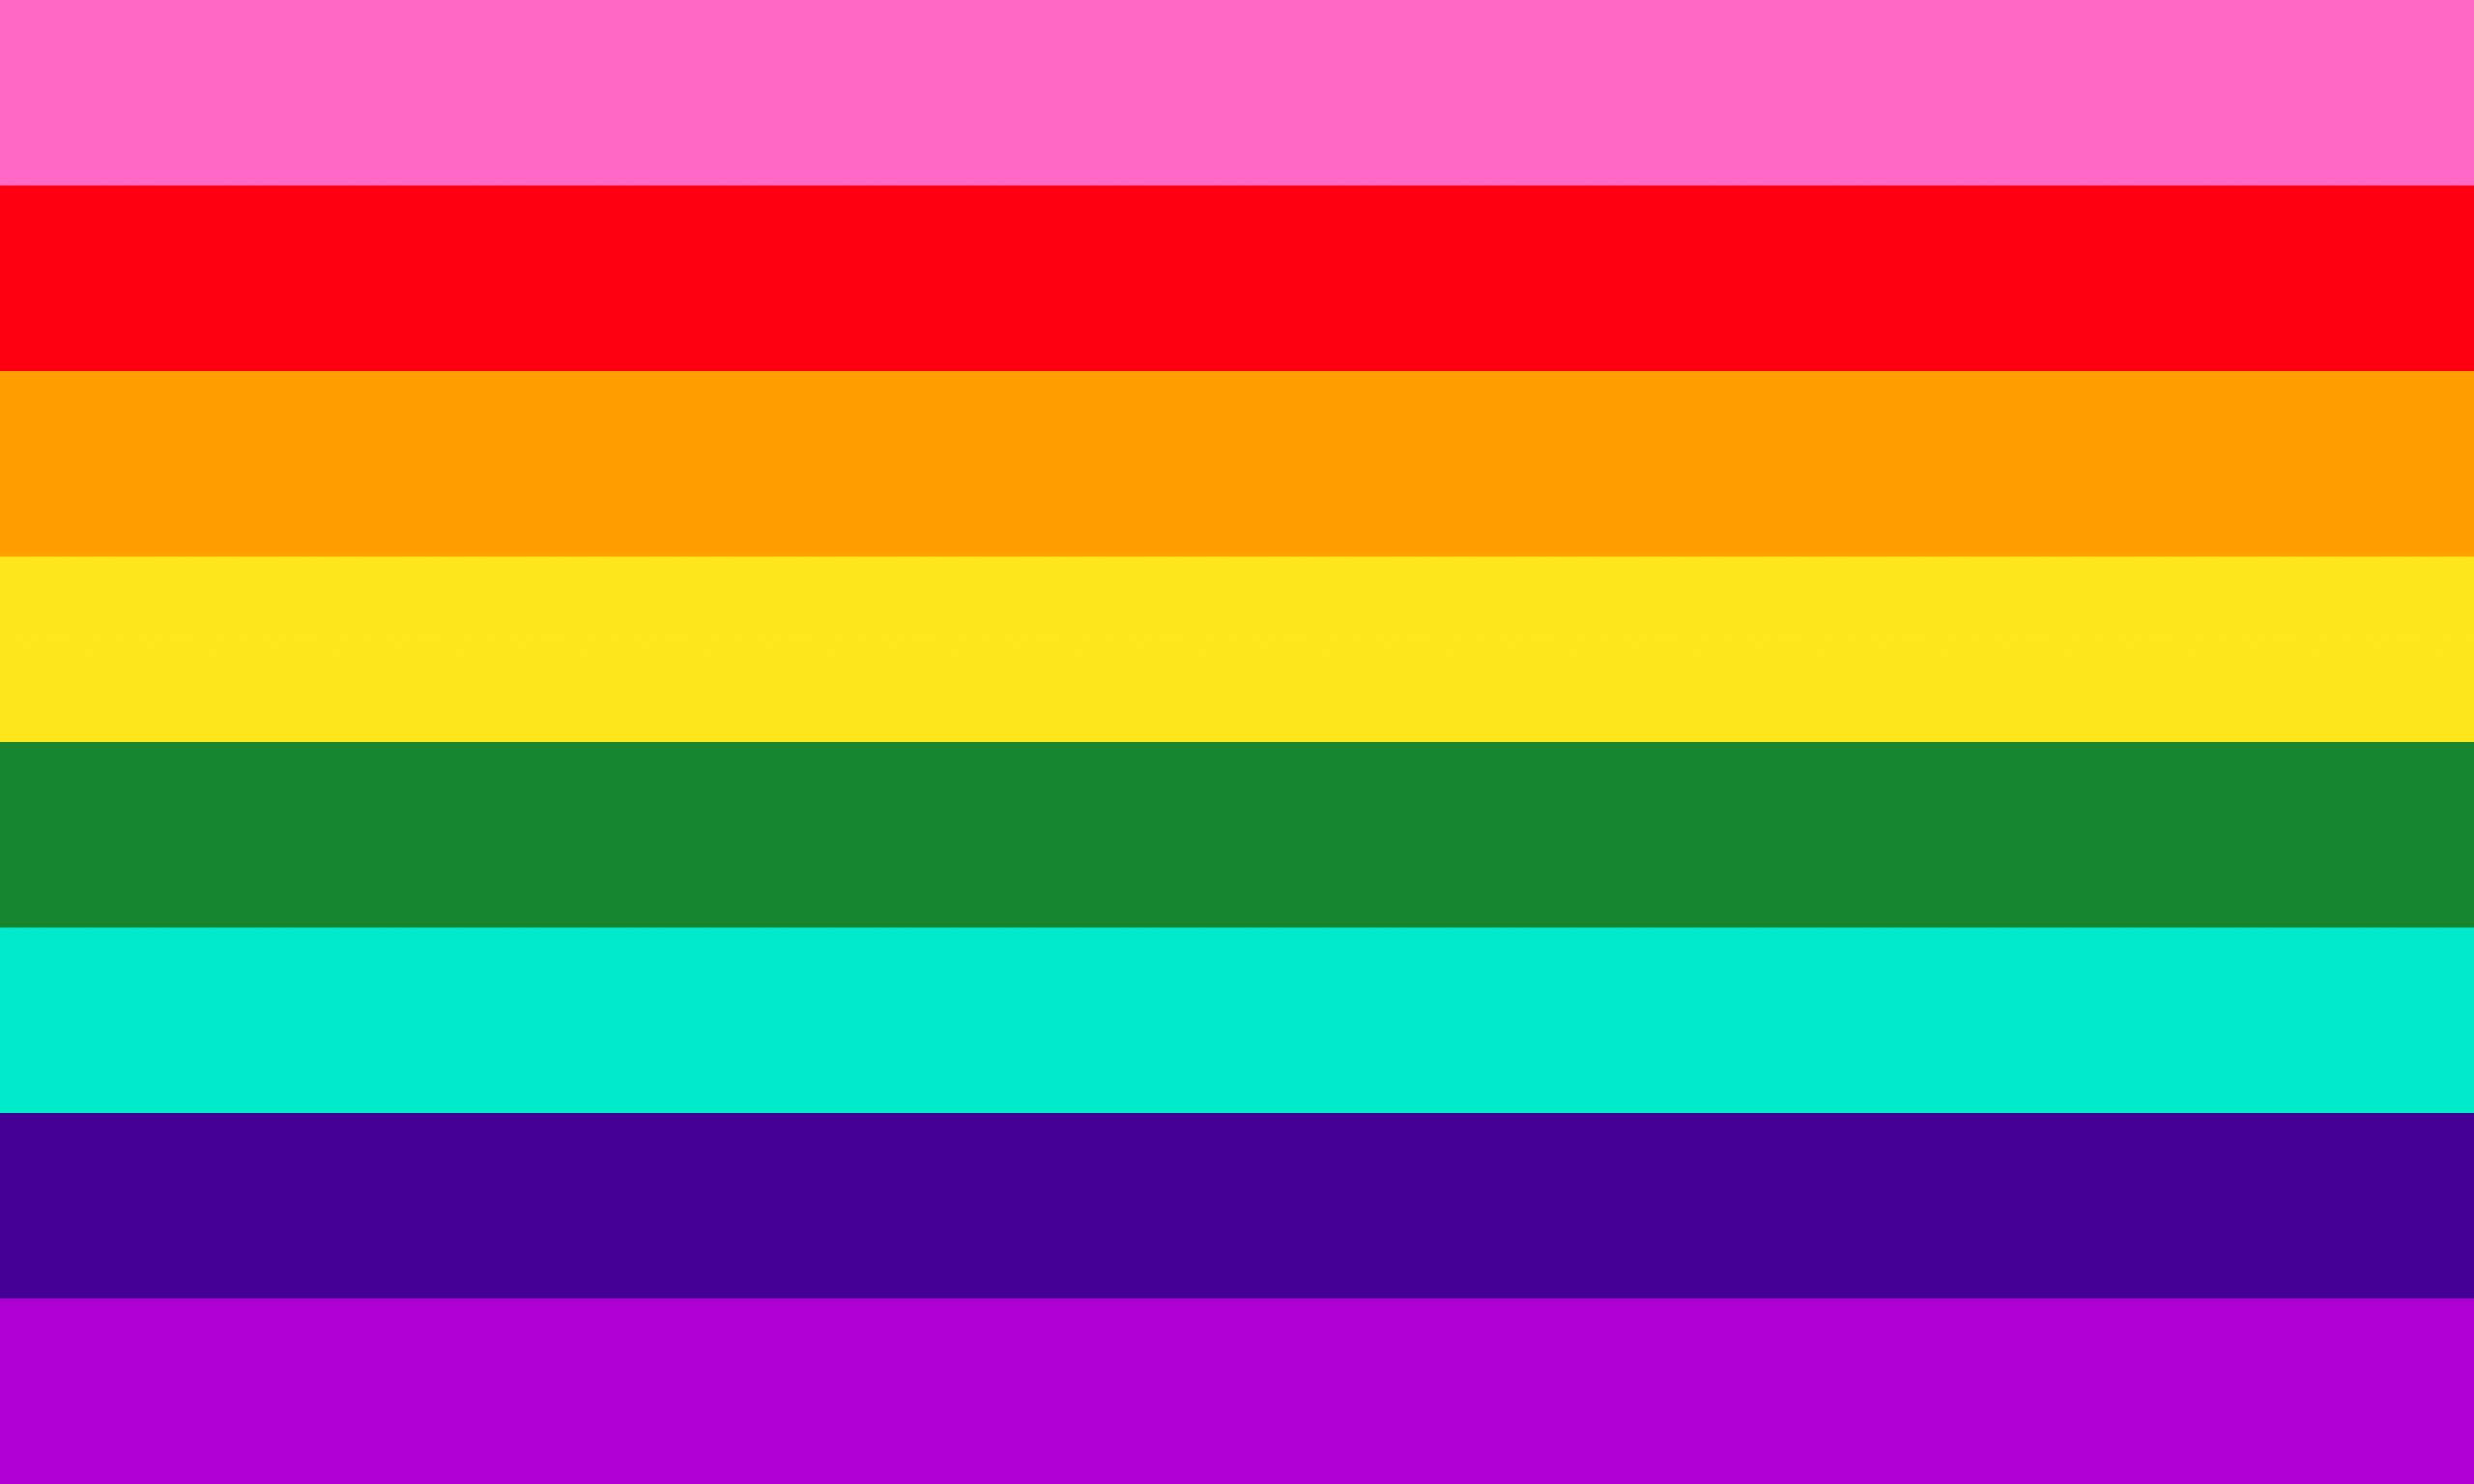 glibert-baker-pride-flag